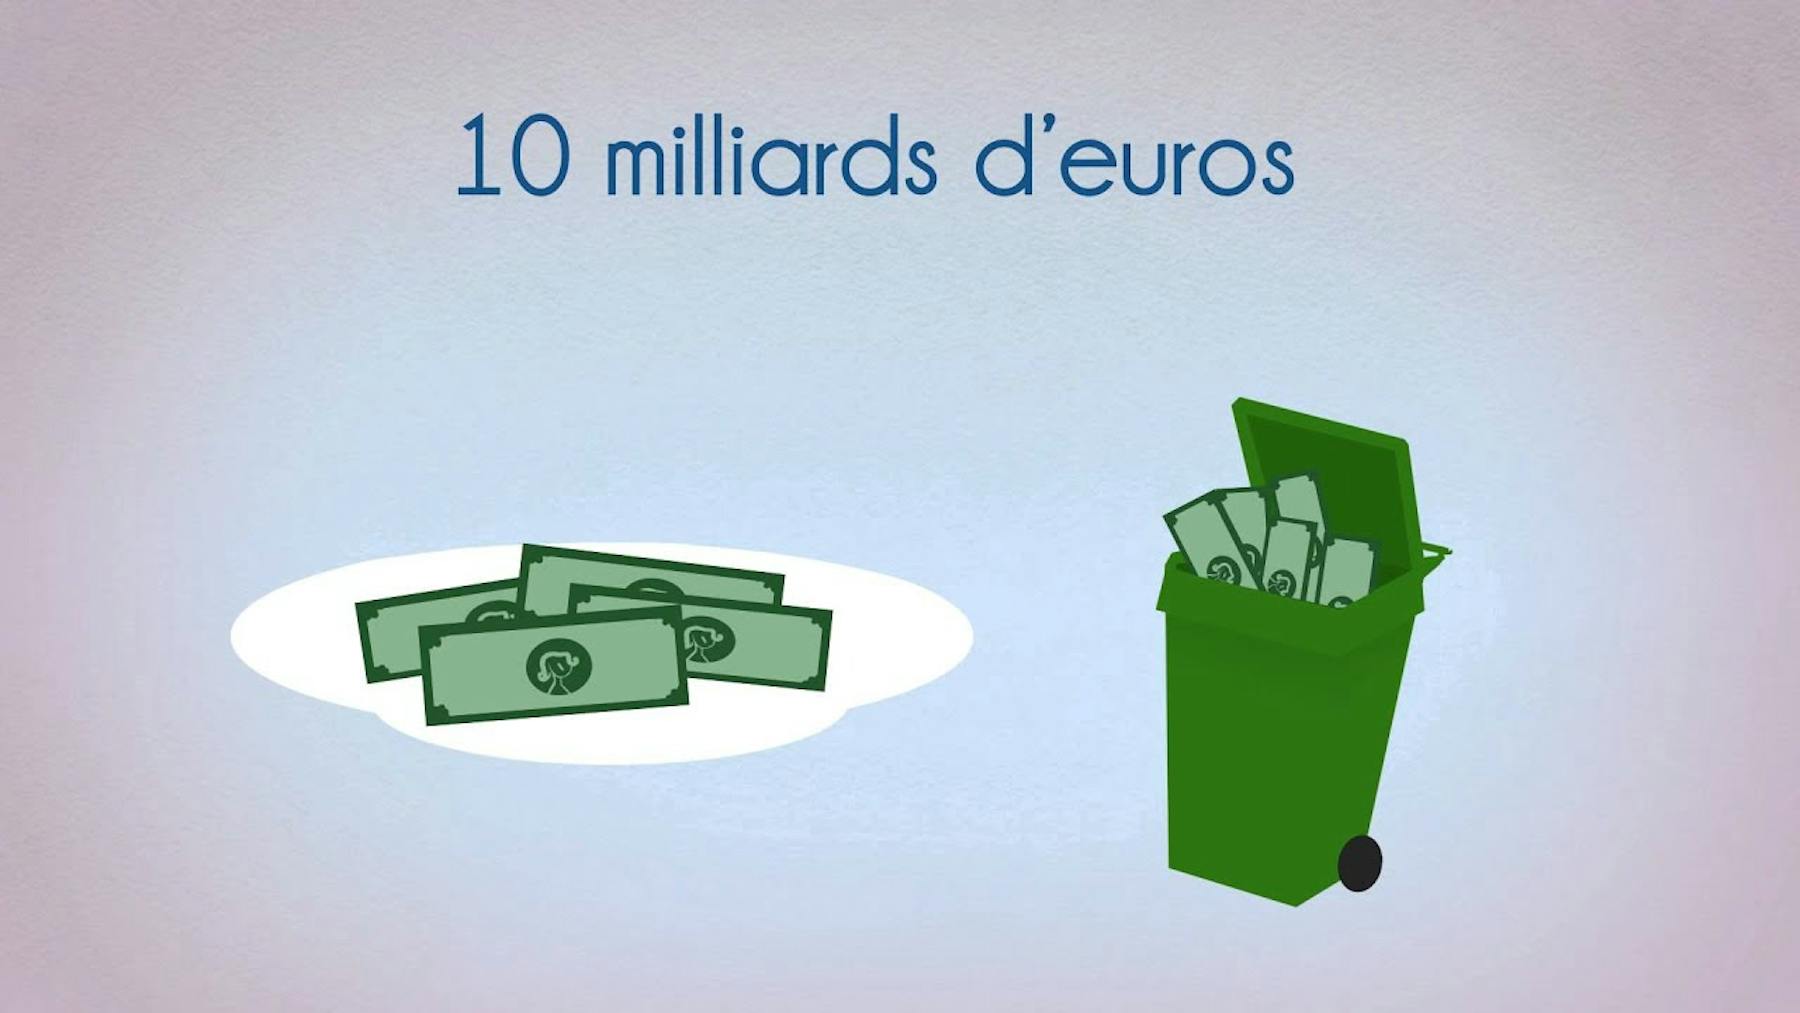 Image d'une poubelle avec "10 milliards d'euros" dedans